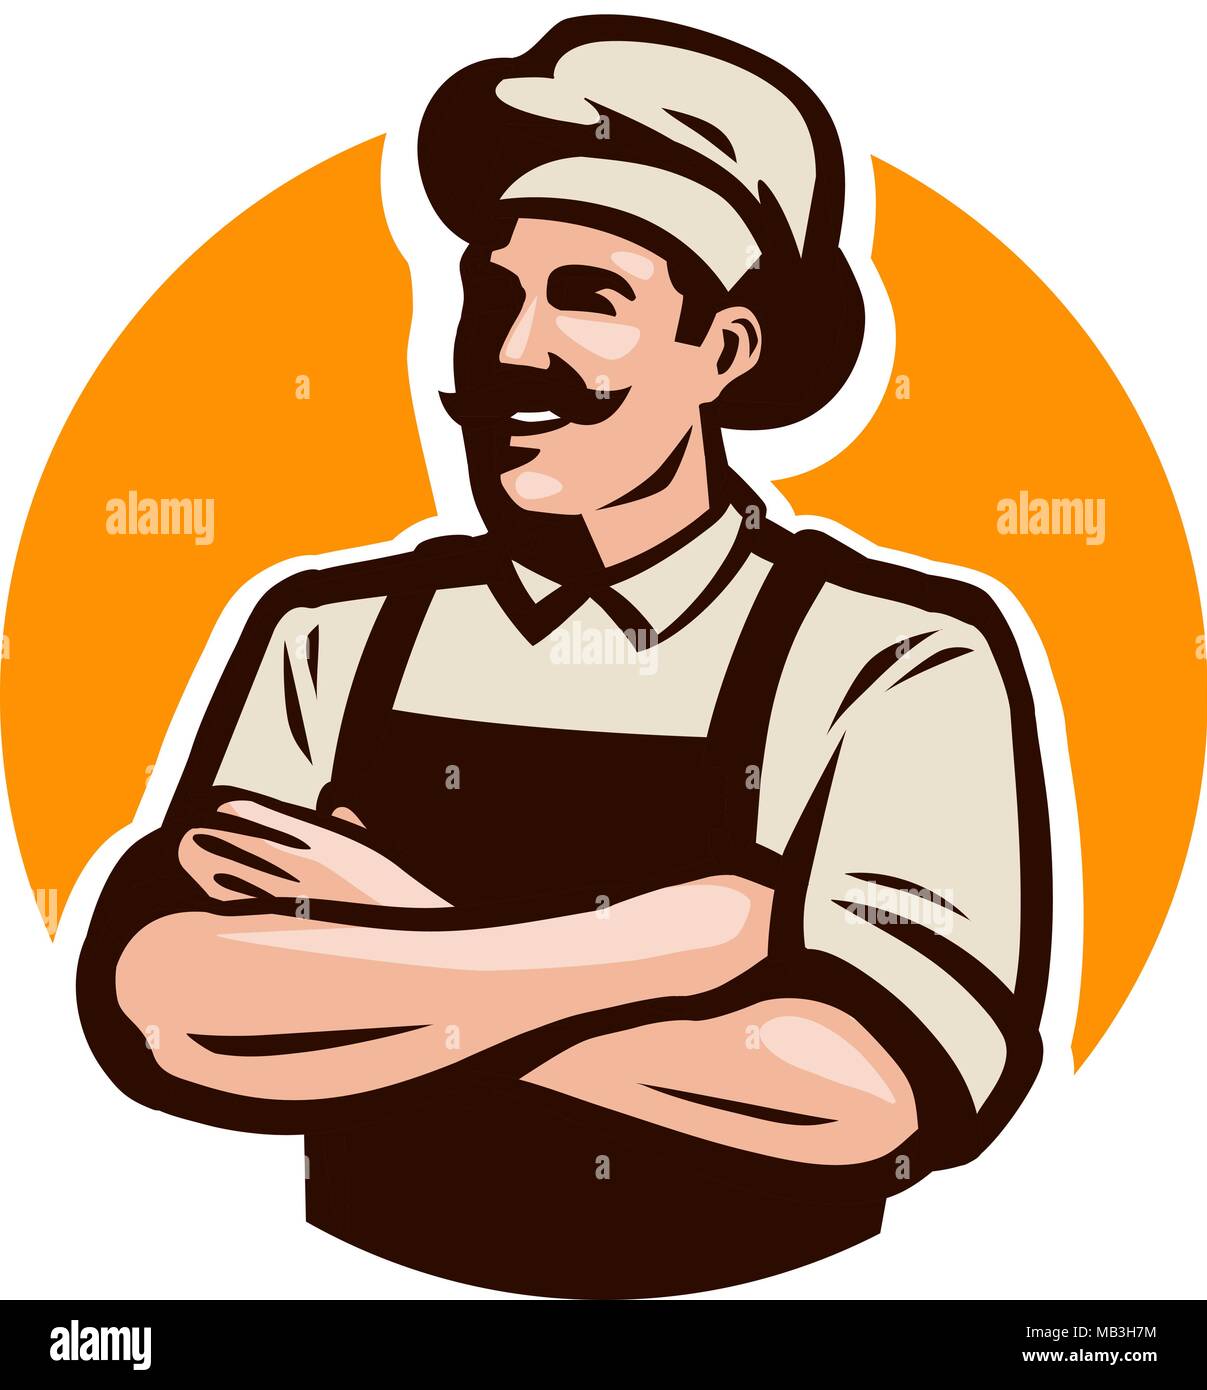 Chef, cook or baker logo. Cafe, restaurant, menu concept. Cartoon ...